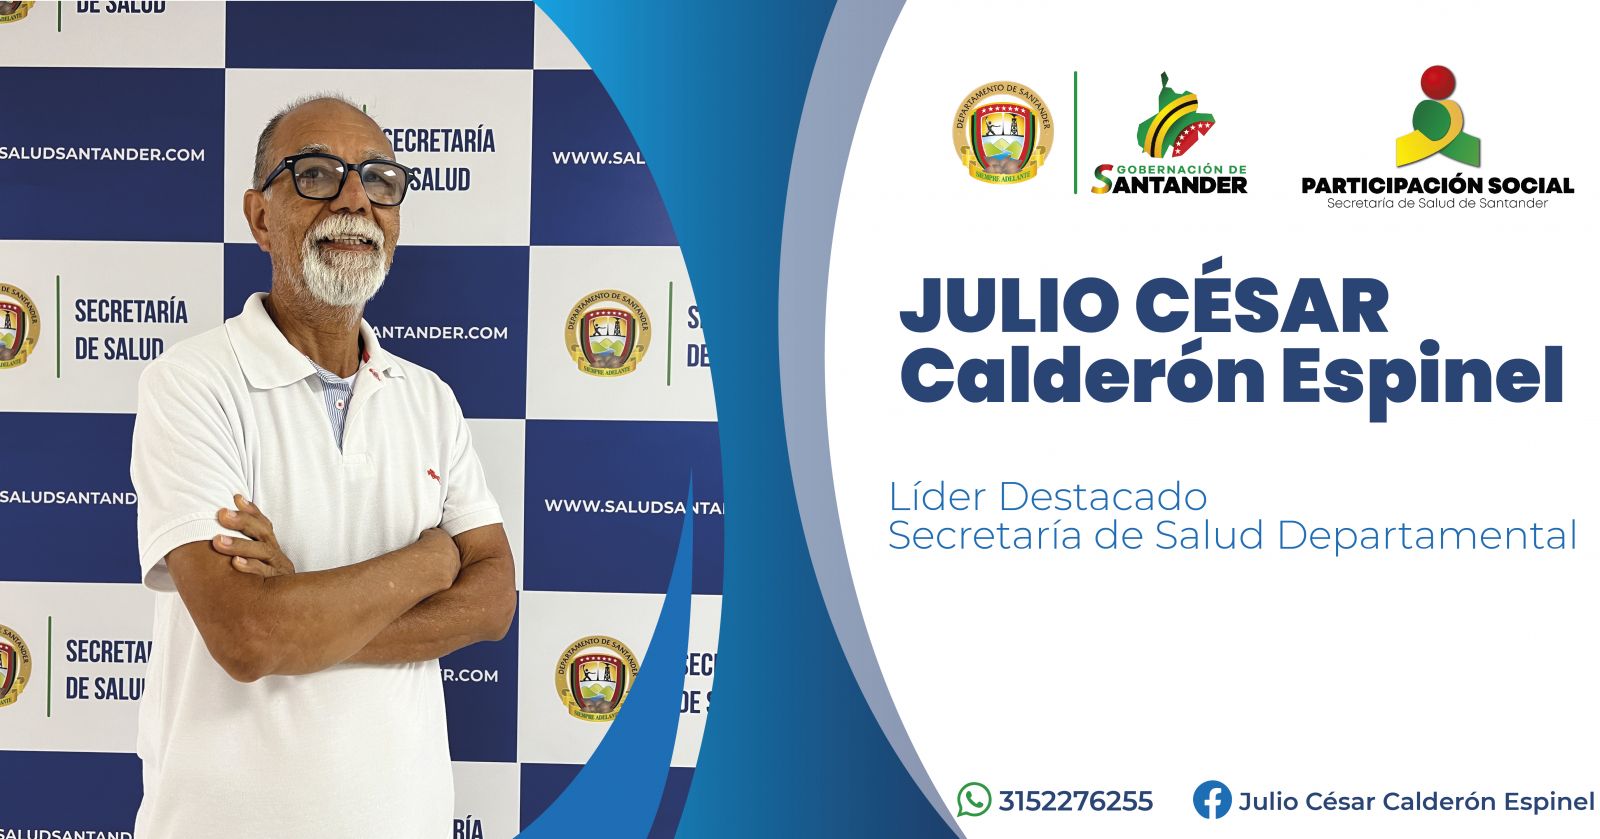 JULIO CESAR CALDERON